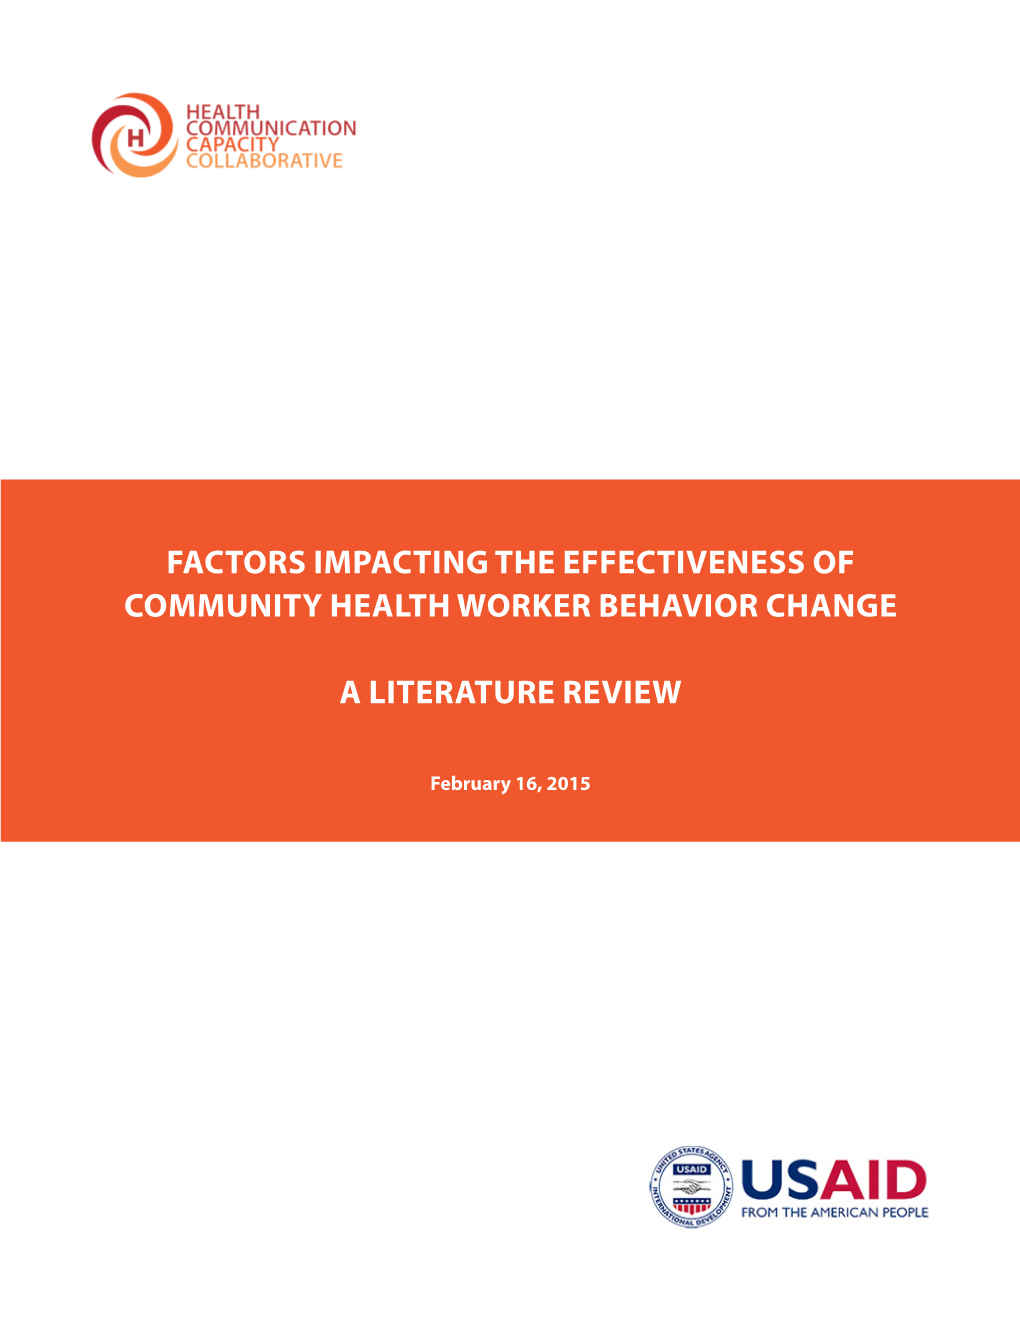 Factors Impacting the Effectiveness of Community Health Worker Behavior Change